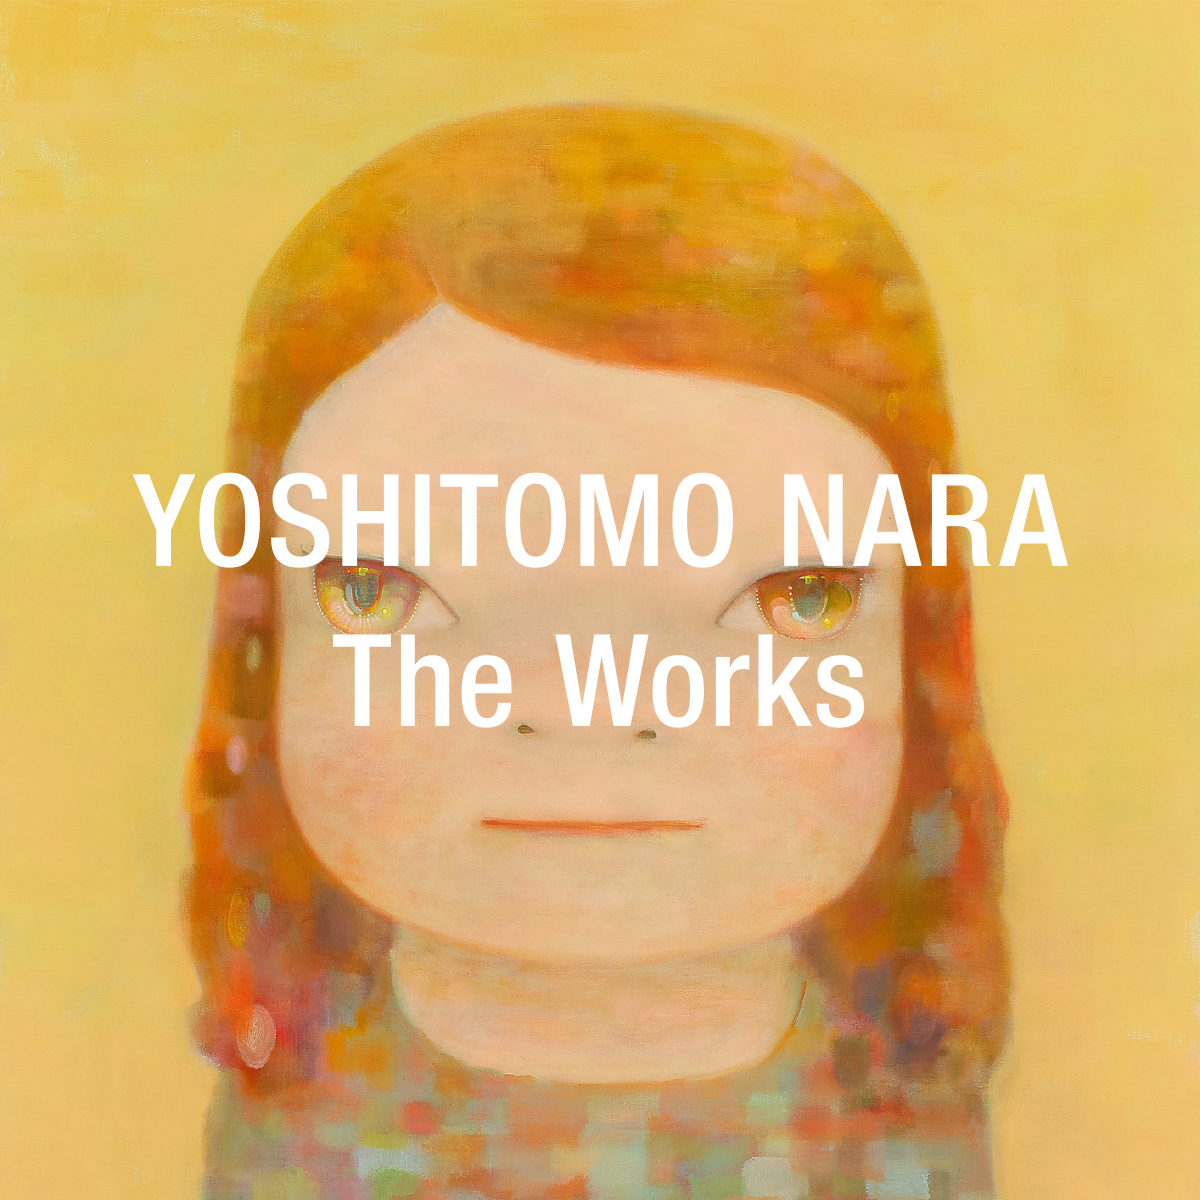 Bibliography | YOSHITOMO NARA The Works